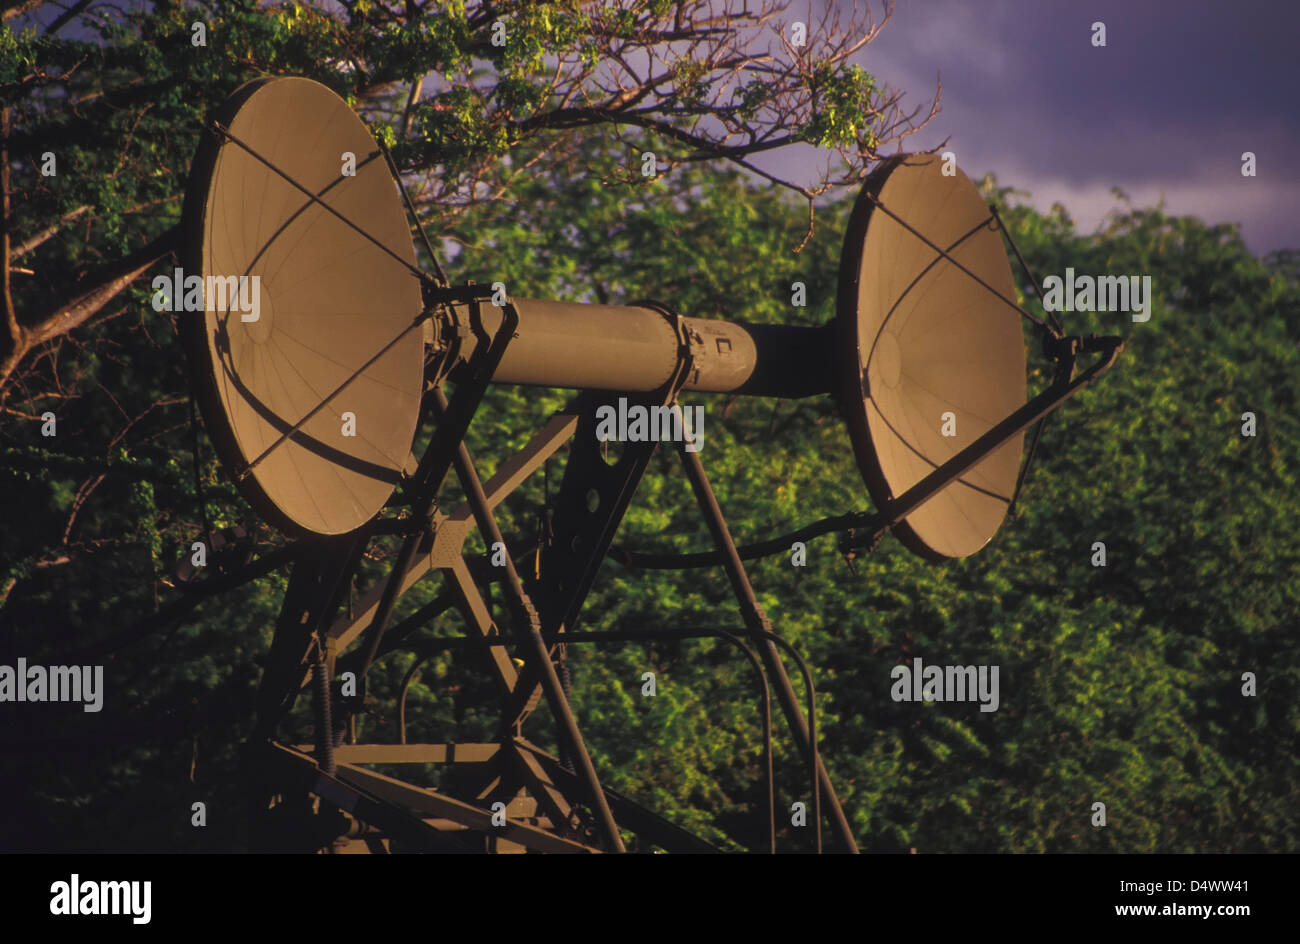 Army ground radar antennae. Stock Photo